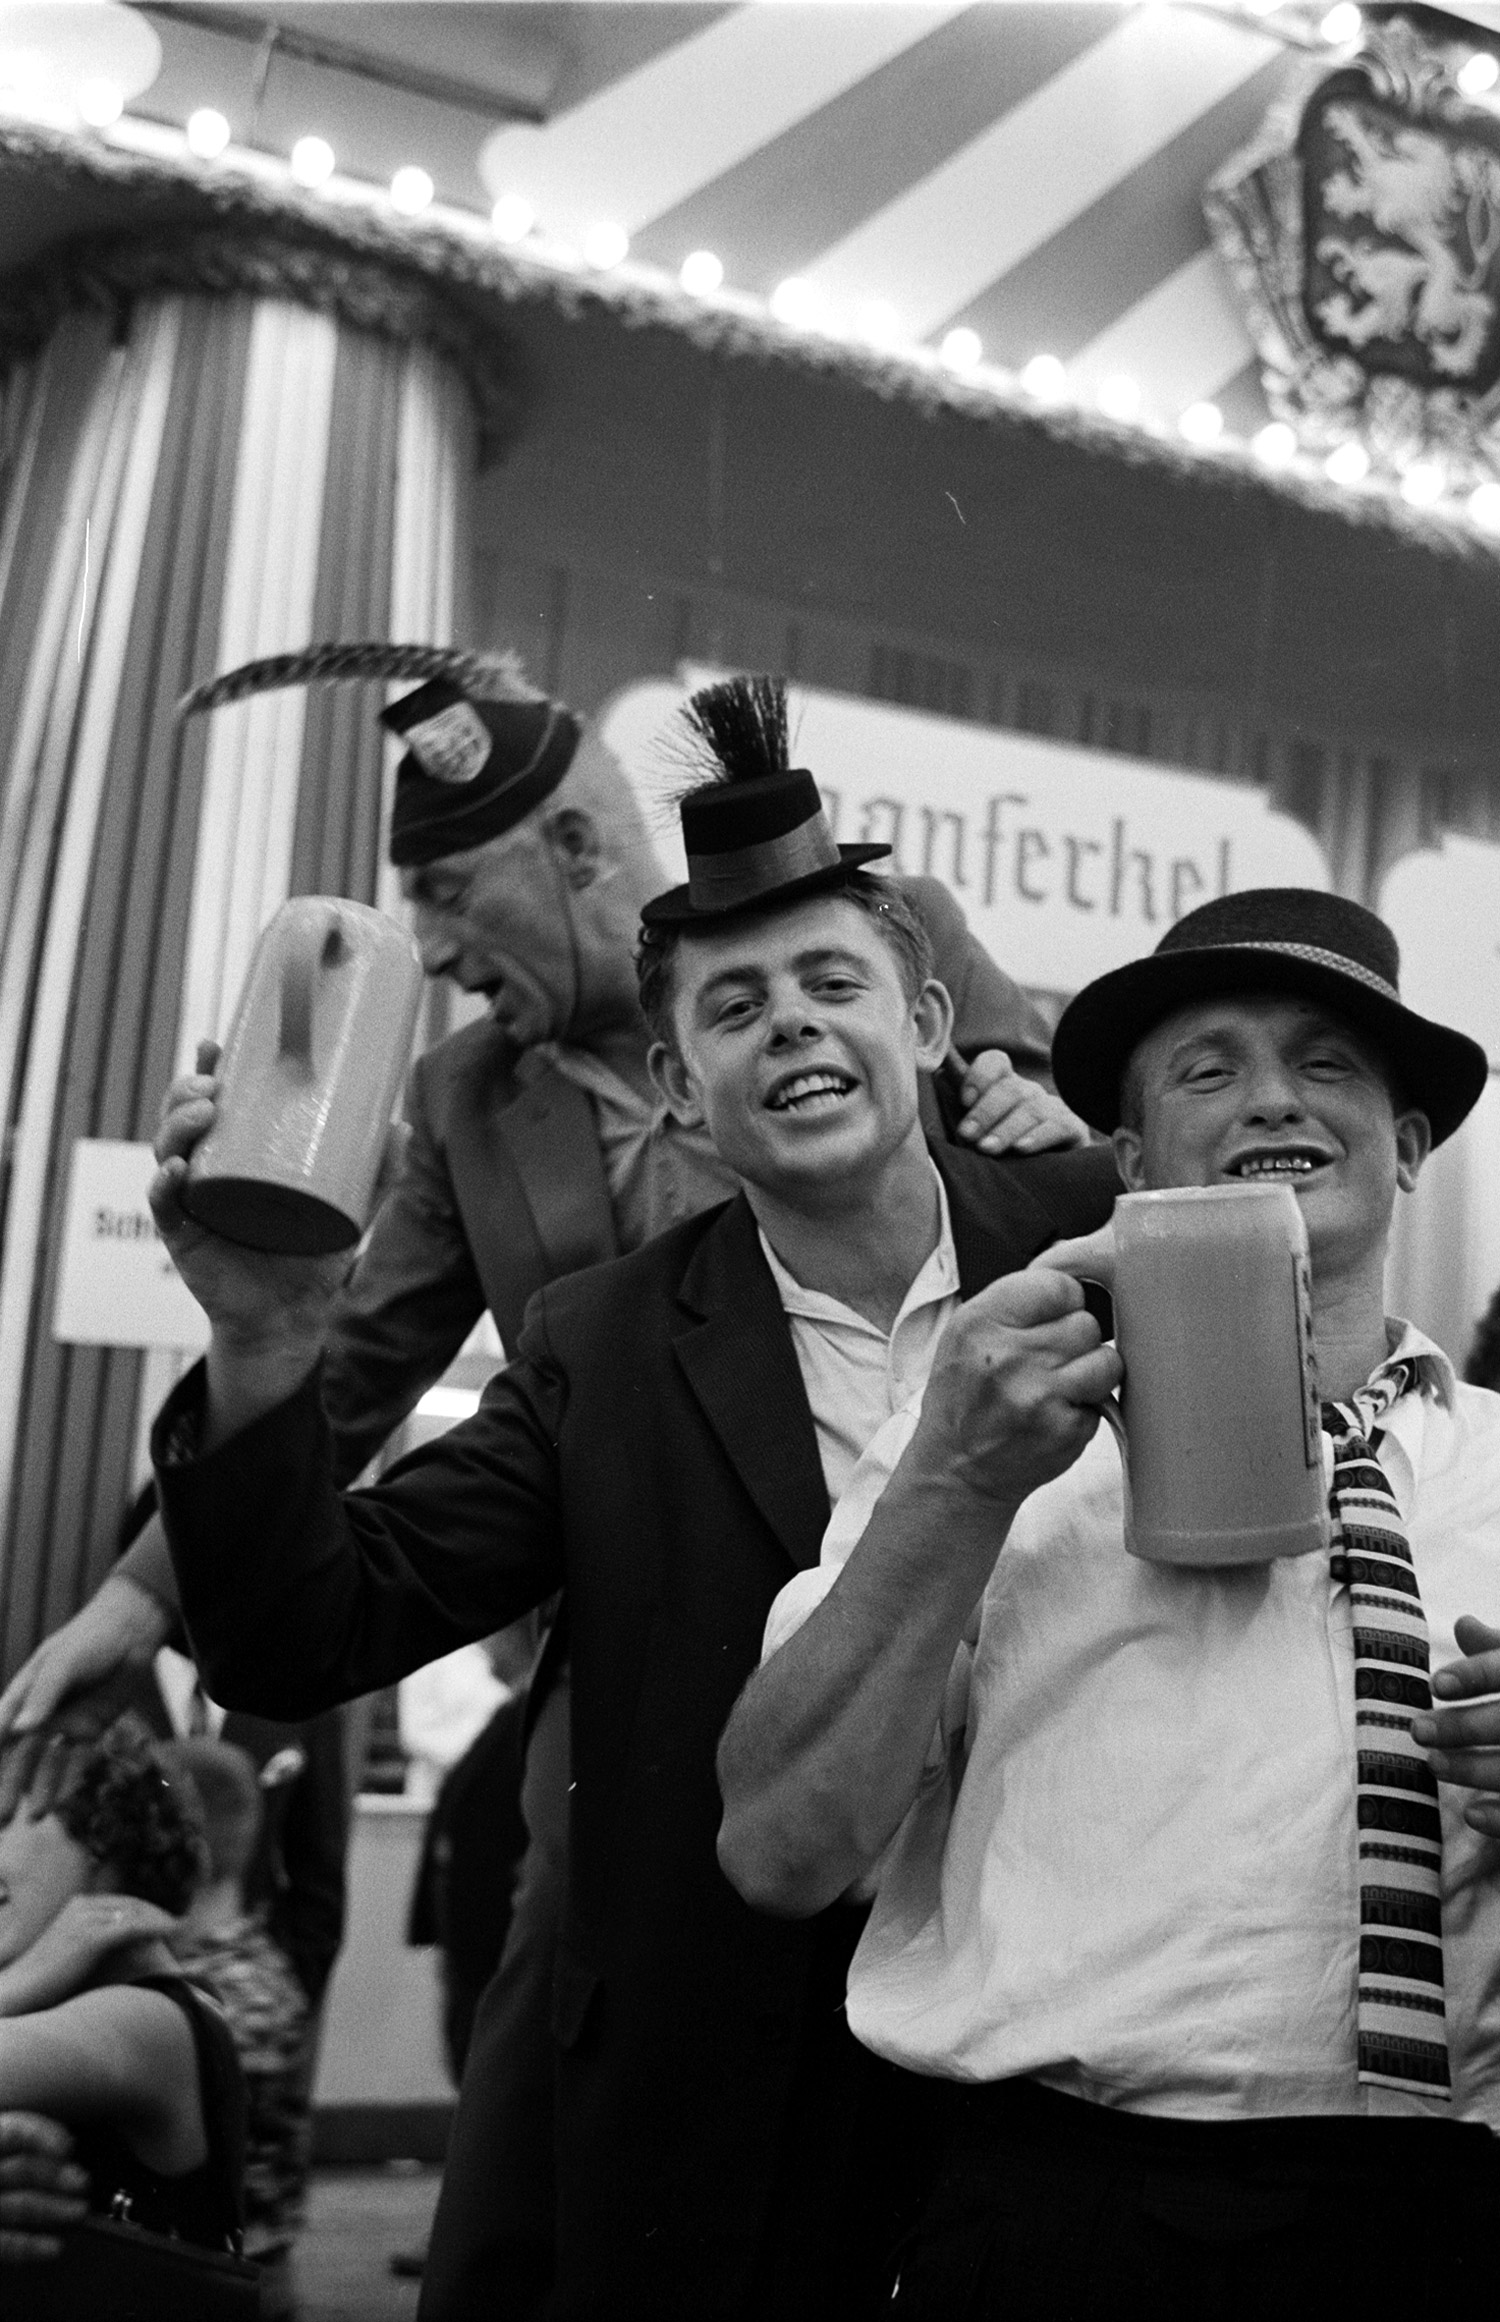 Oktoberfest in Germany, 1961.